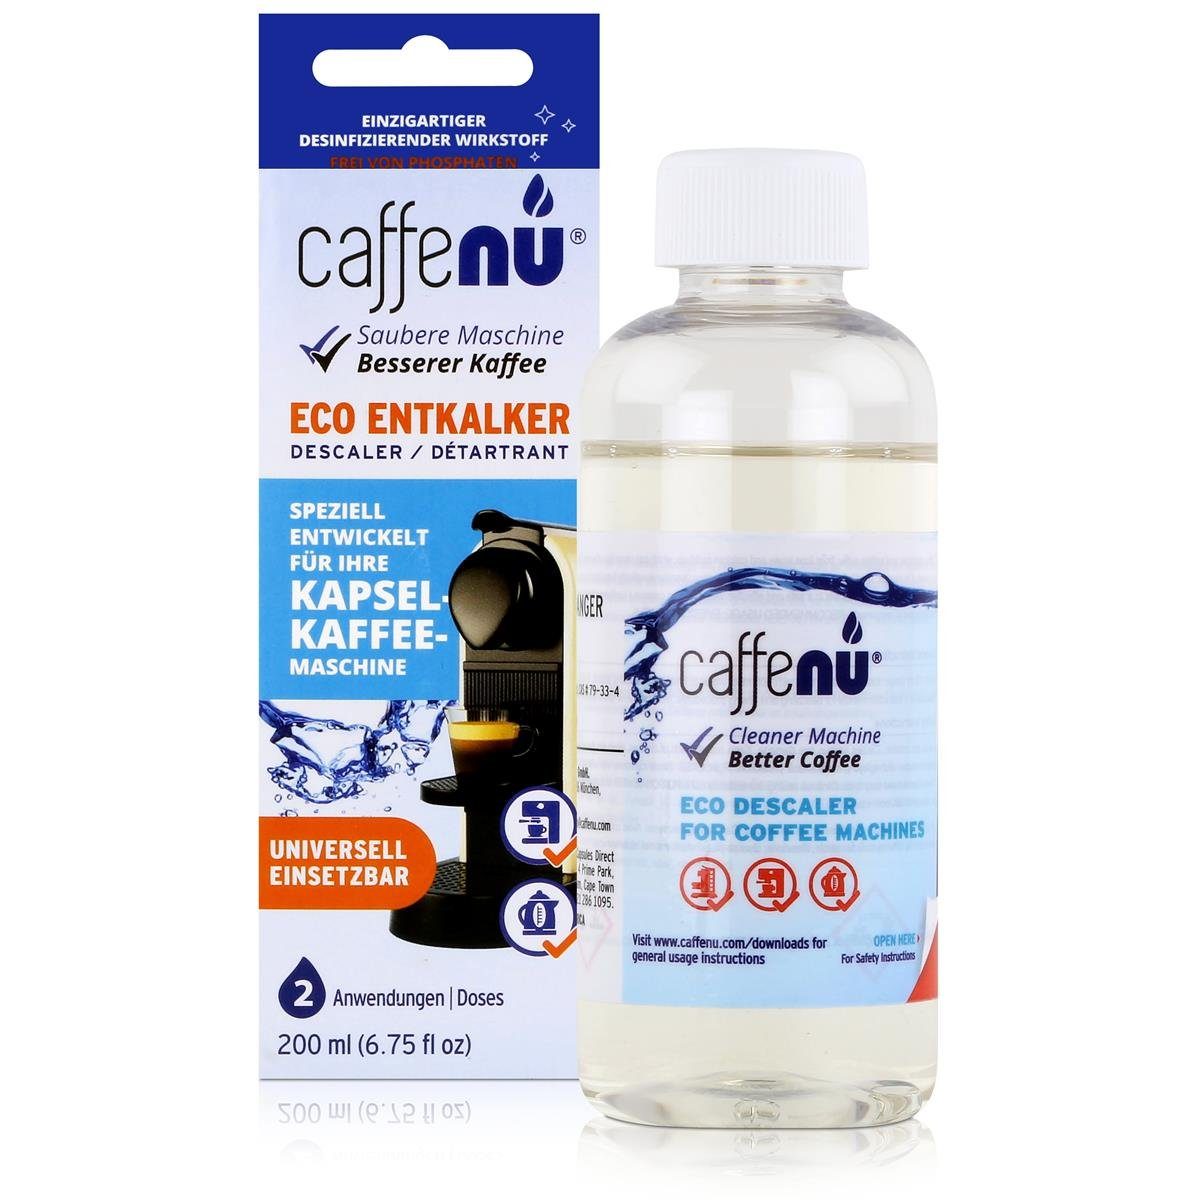 caffenu Kapsel-Kaffee-Maschinen 200ml Eco (4e Entkalker - Speziell Caffenu Entkalker für